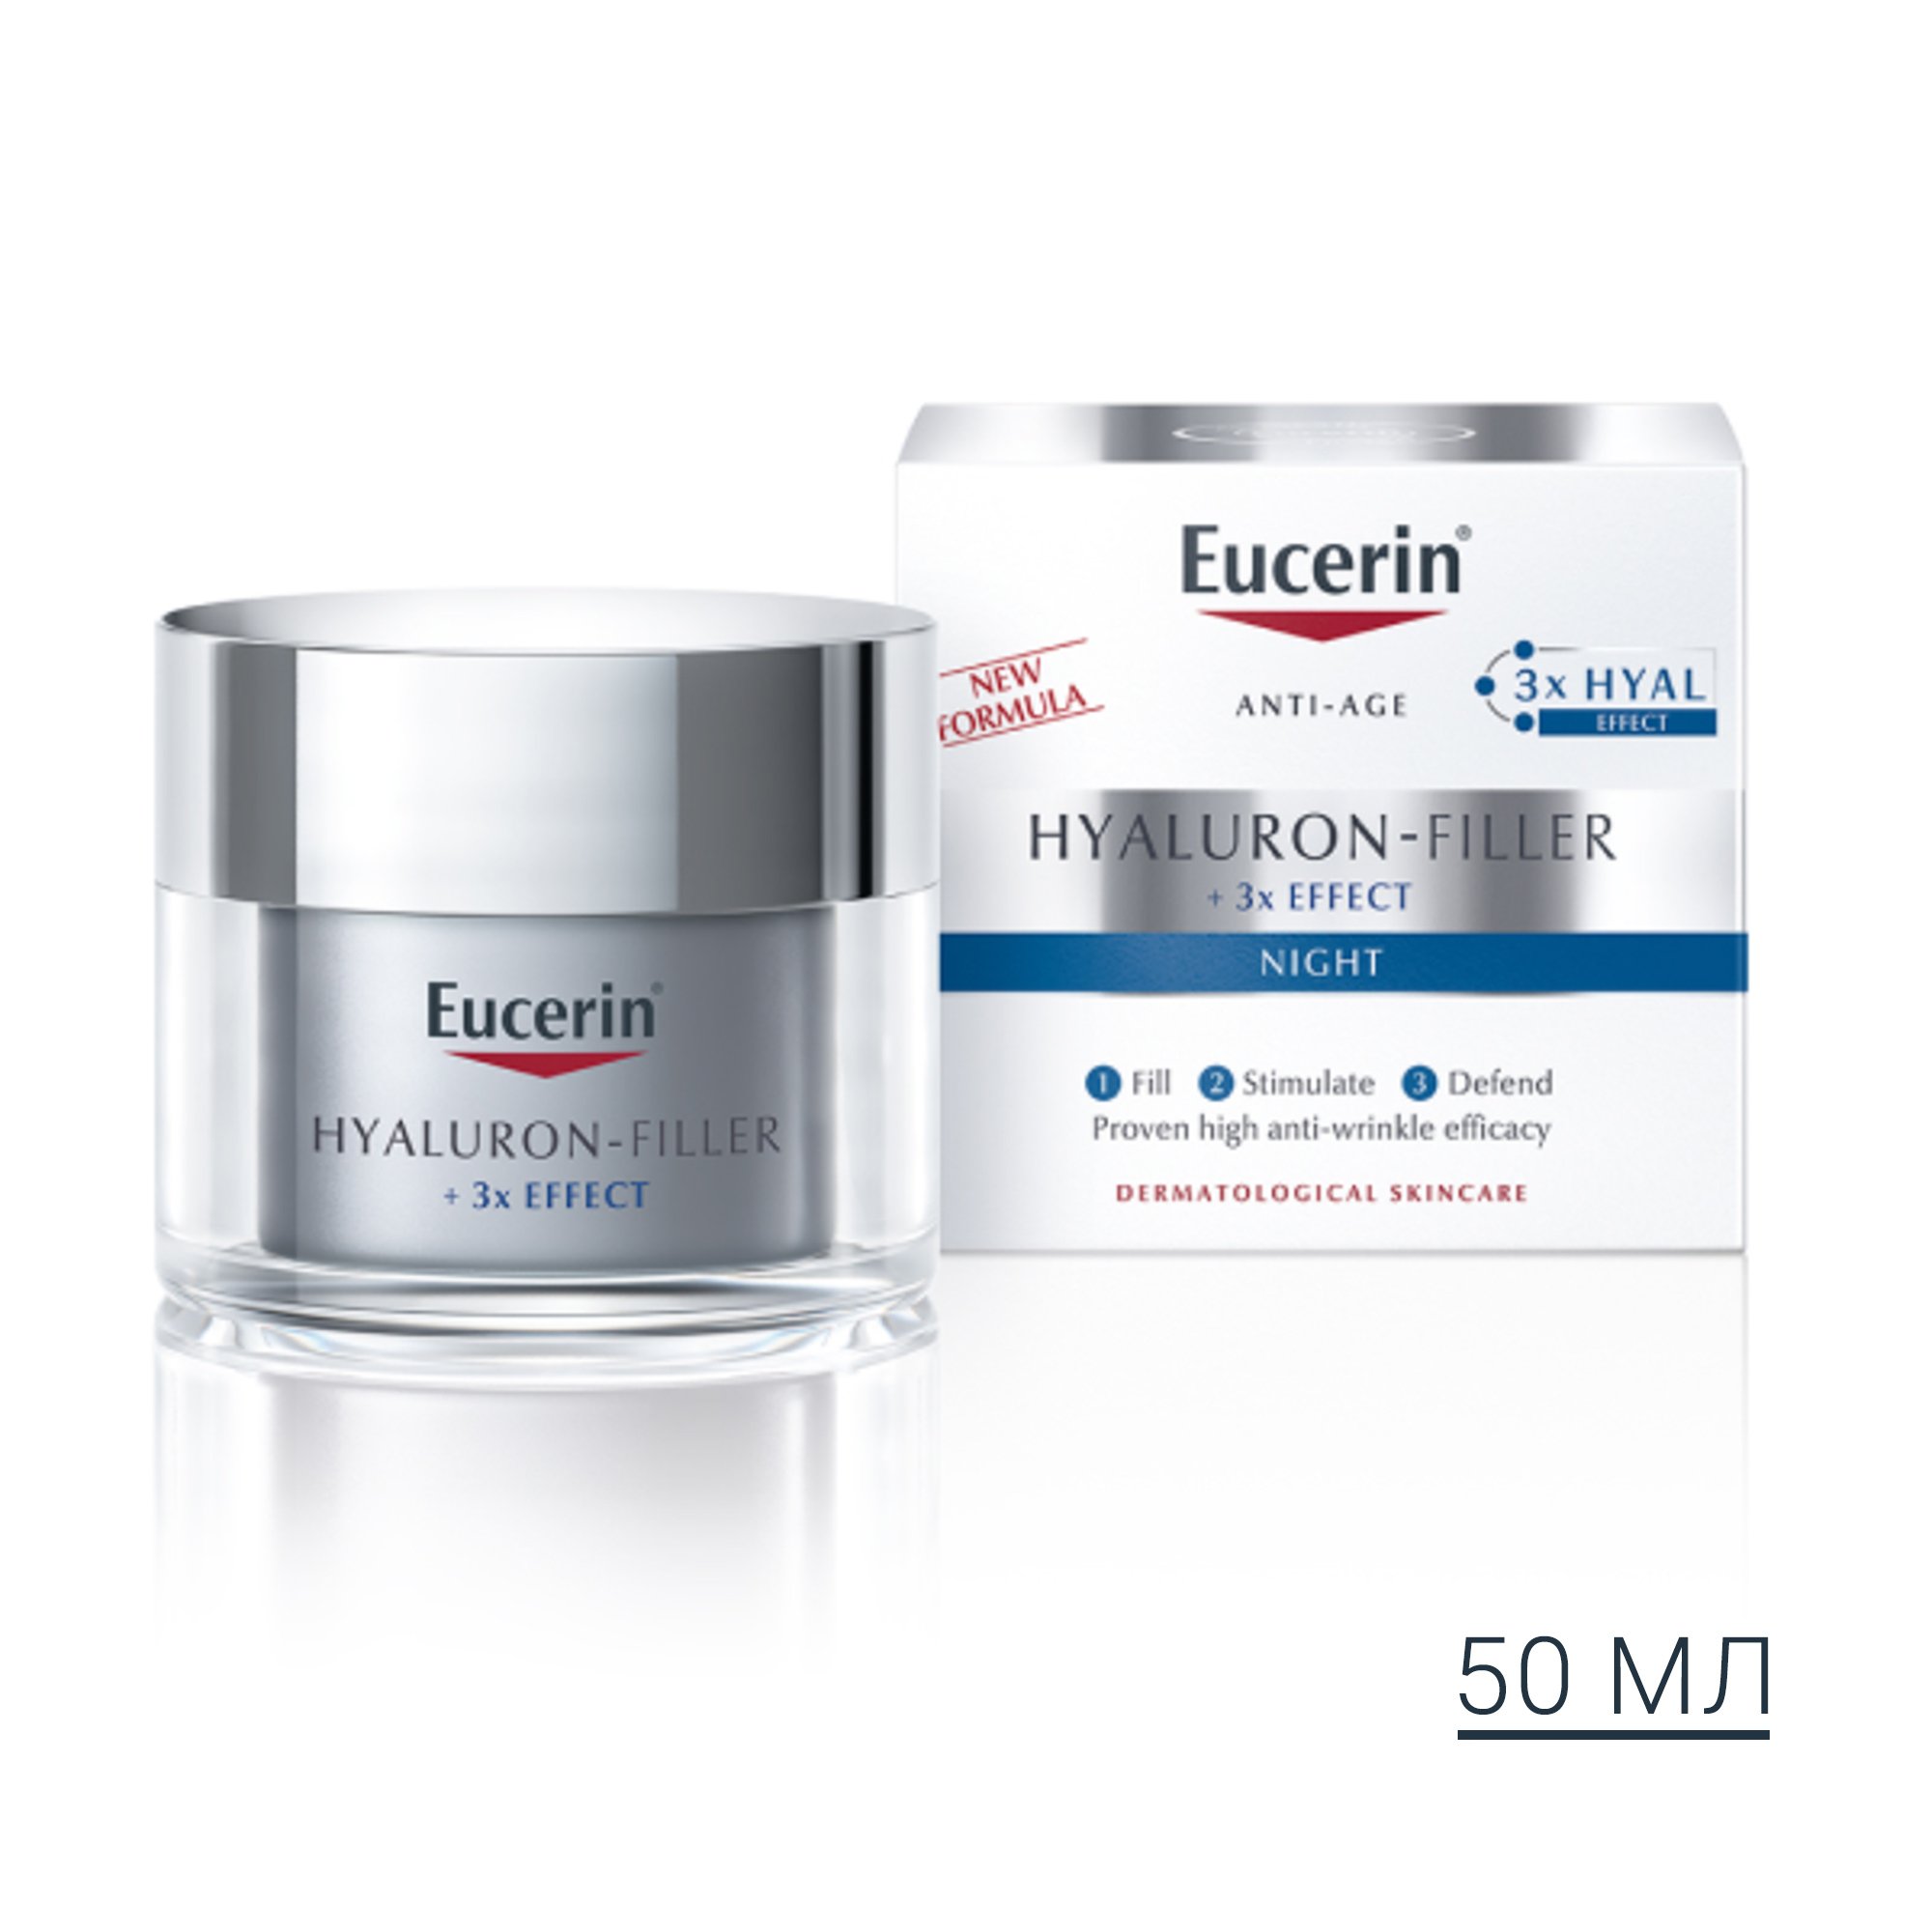 Нічний крем проти зморшок Eucerin Hyaluron Filler, для всіх типів шкіри, 50 мл - фото 7